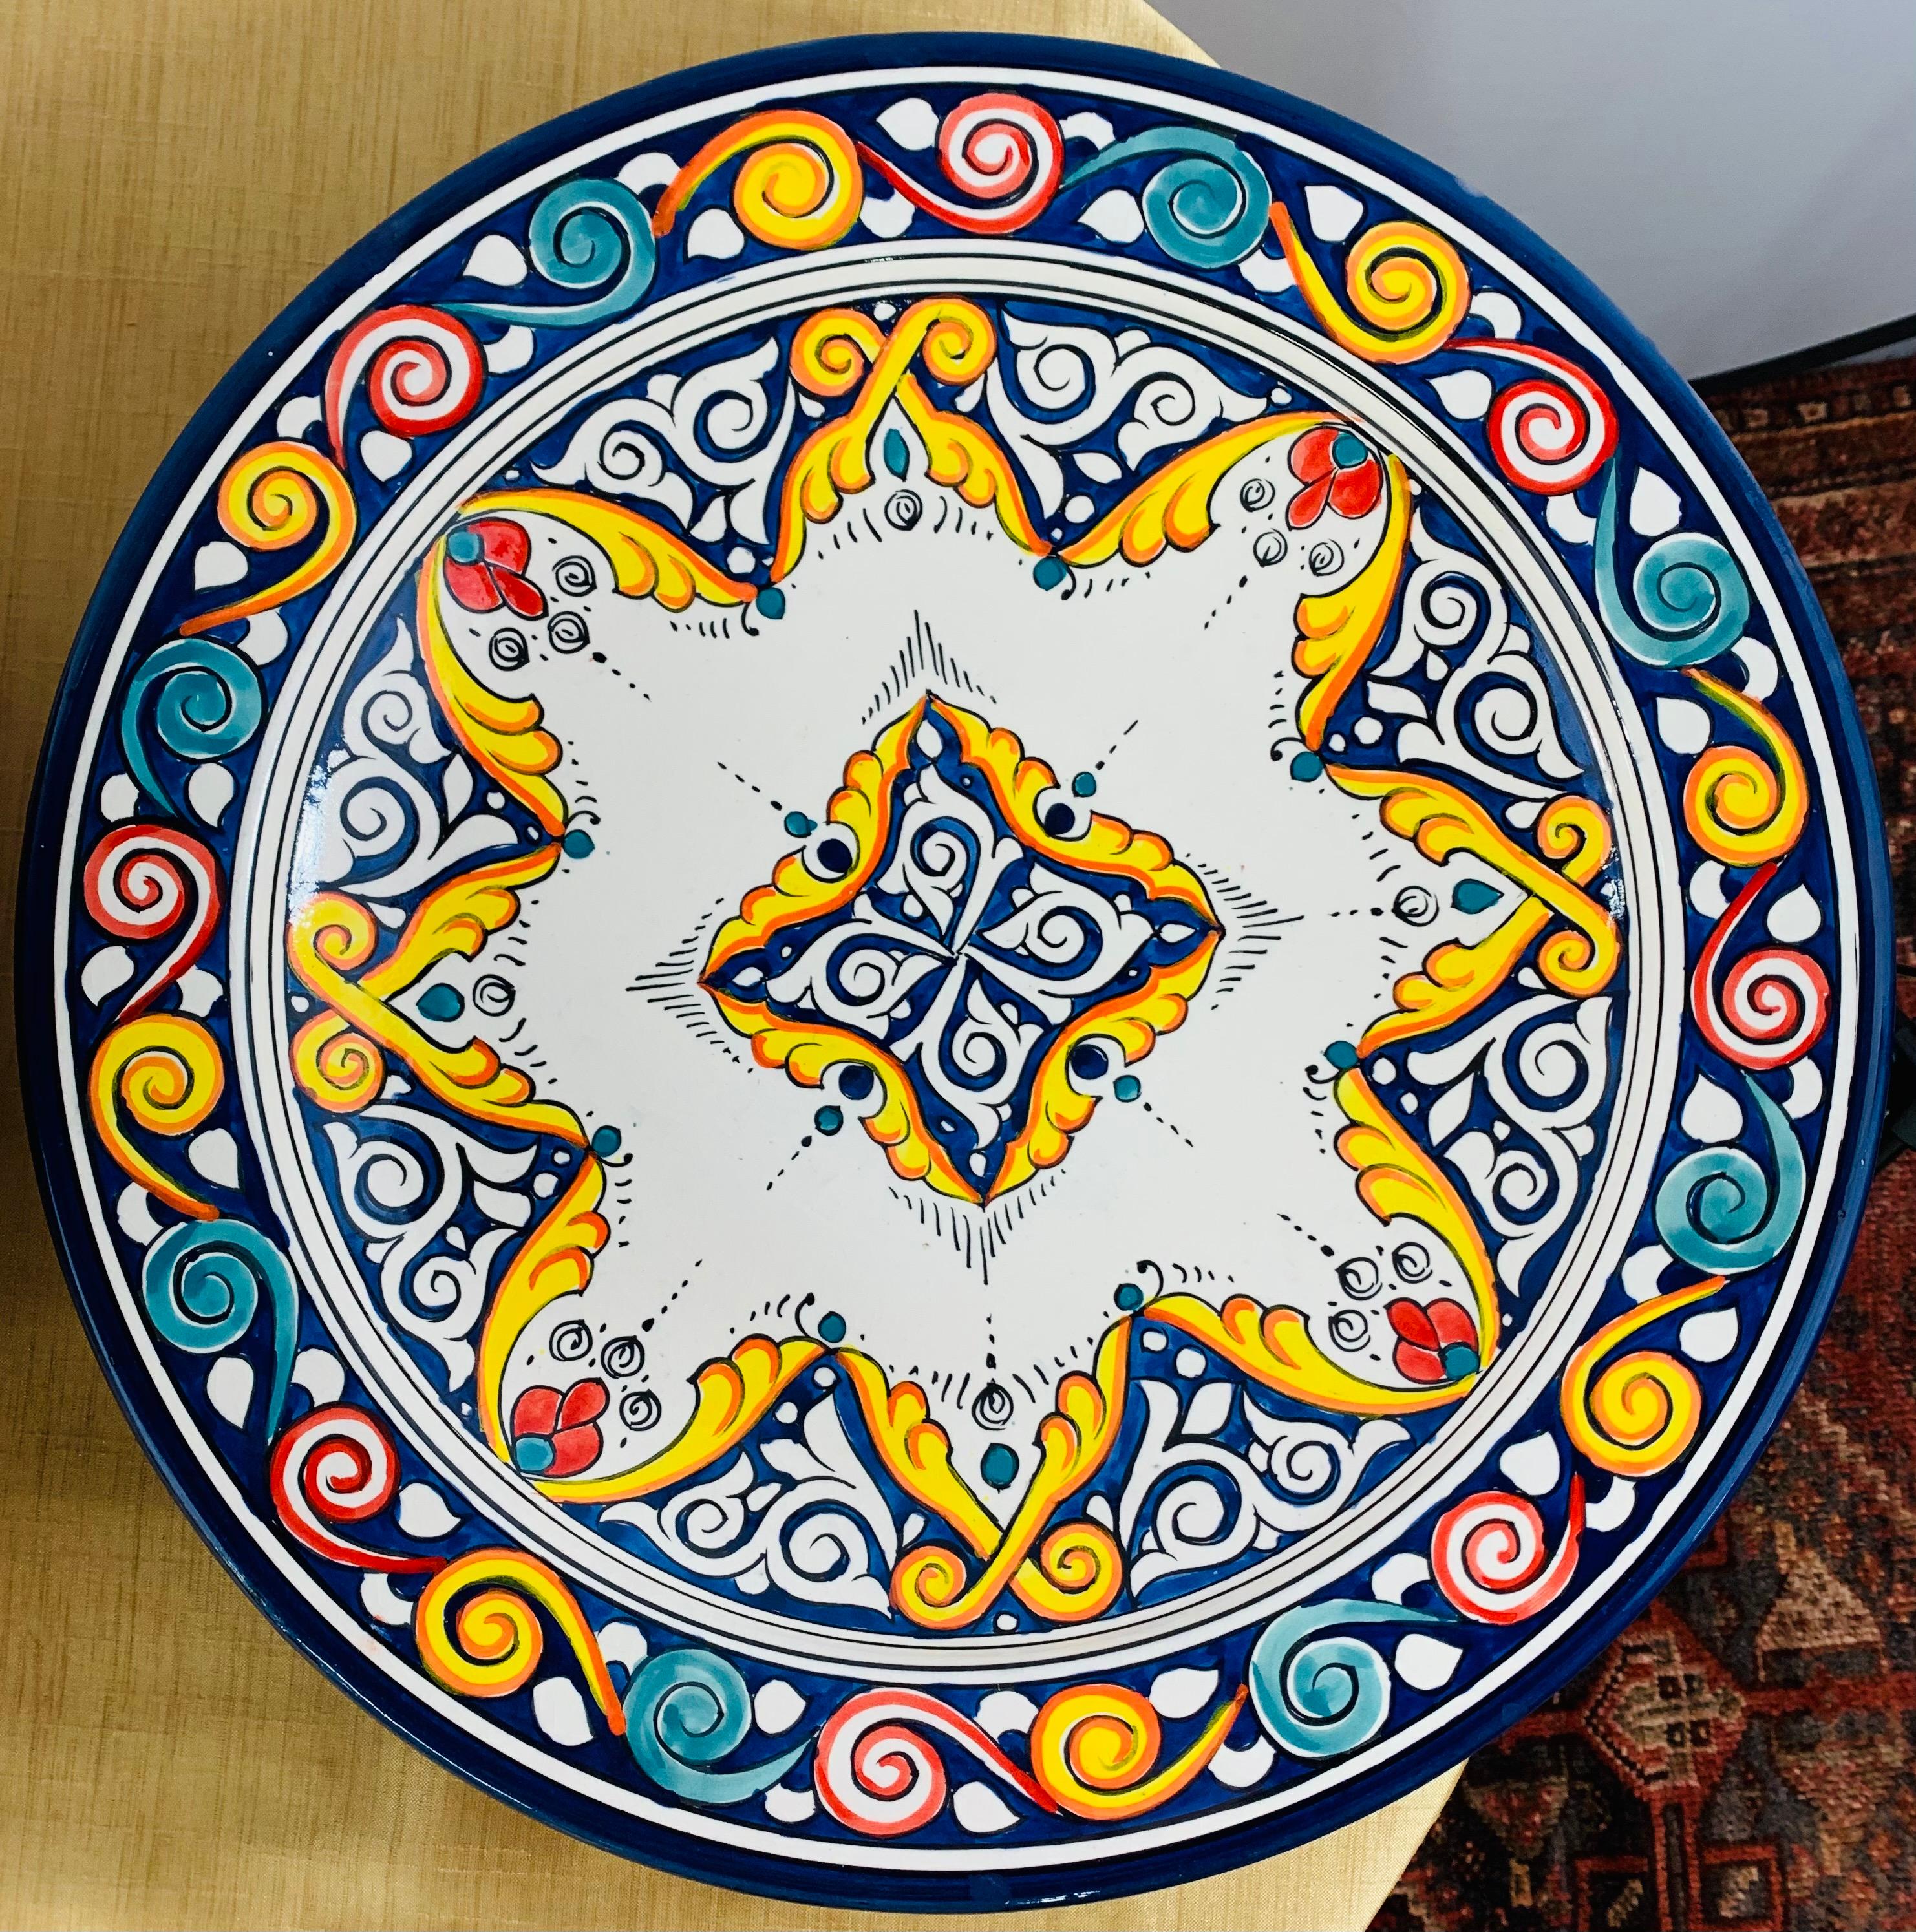 Des motifs complexes et ornés d'arabesques aux couleurs envoûtantes définissent ces grandes et magnifiques assiettes à dîner en céramique. Fabriquées à la main dans les ateliers animés des maîtres artisans de la ville côtière de Safi, ces jolies